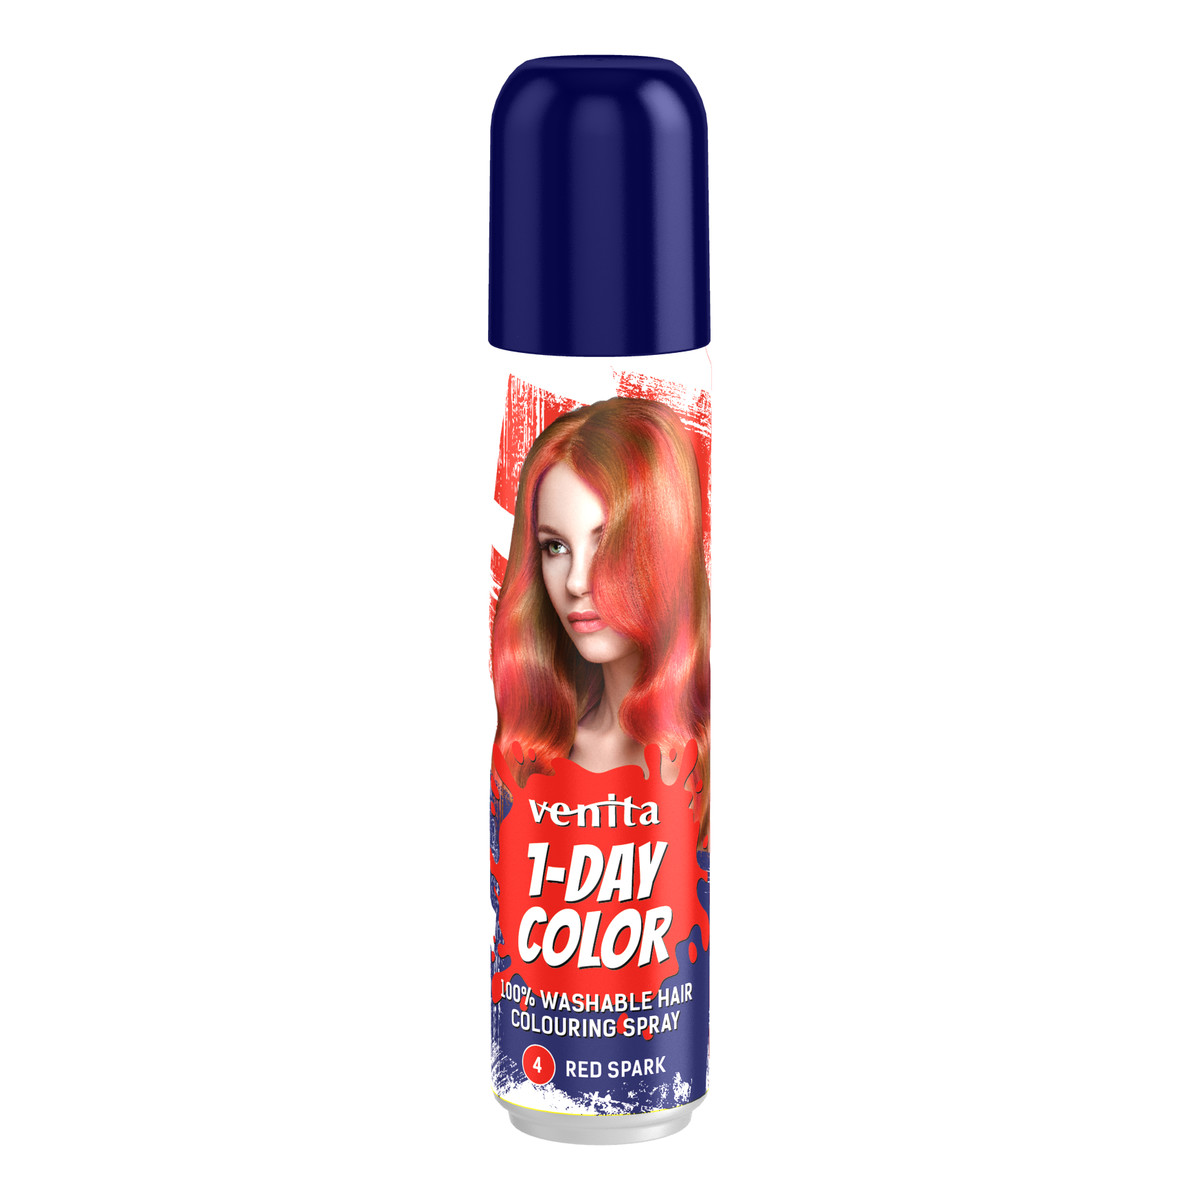 Venita 1-DAY Spray koloryzujący do włosów 50ml